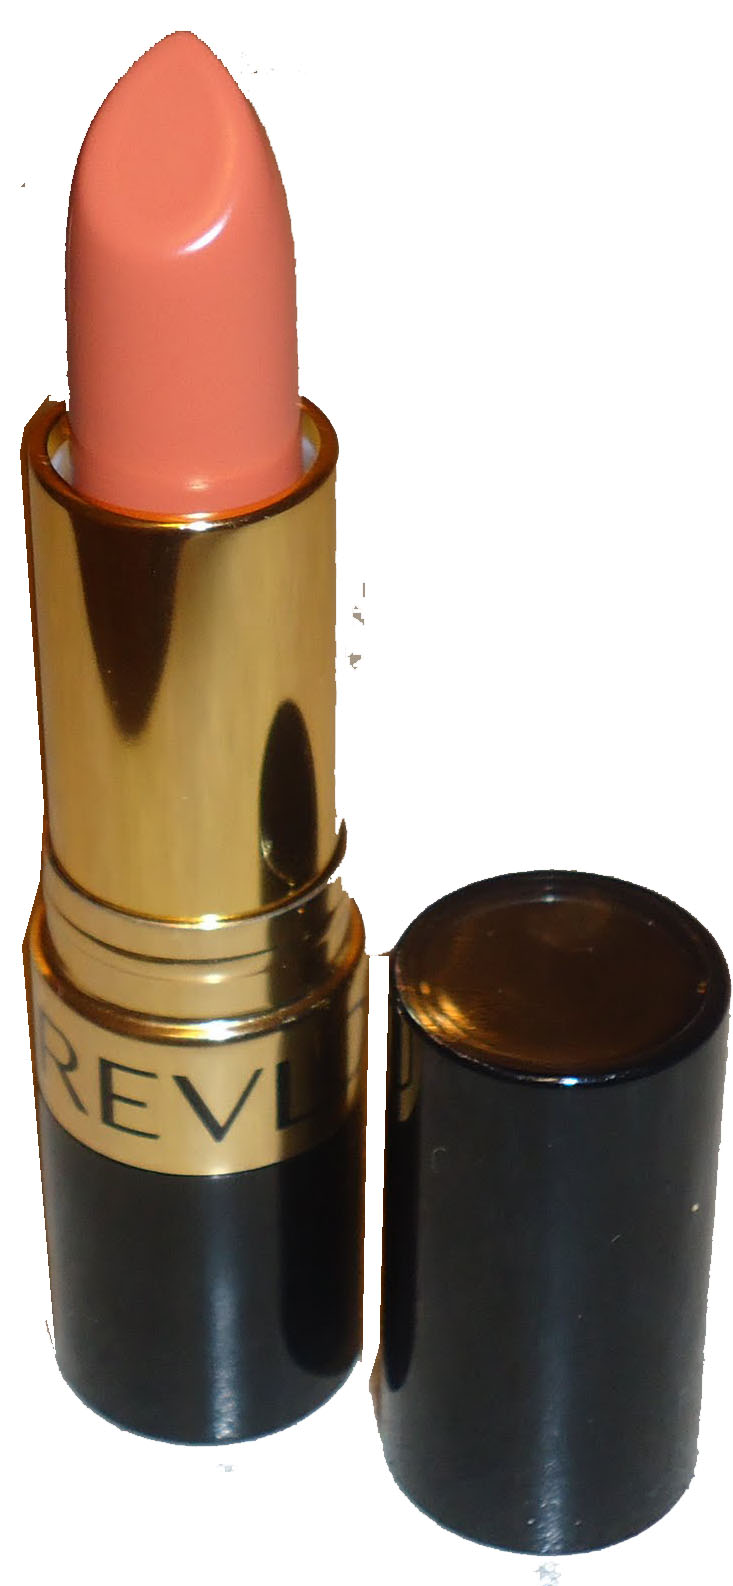 Revlon Super Lustrous Crème Lipstick -  240 Sandelwood Beige